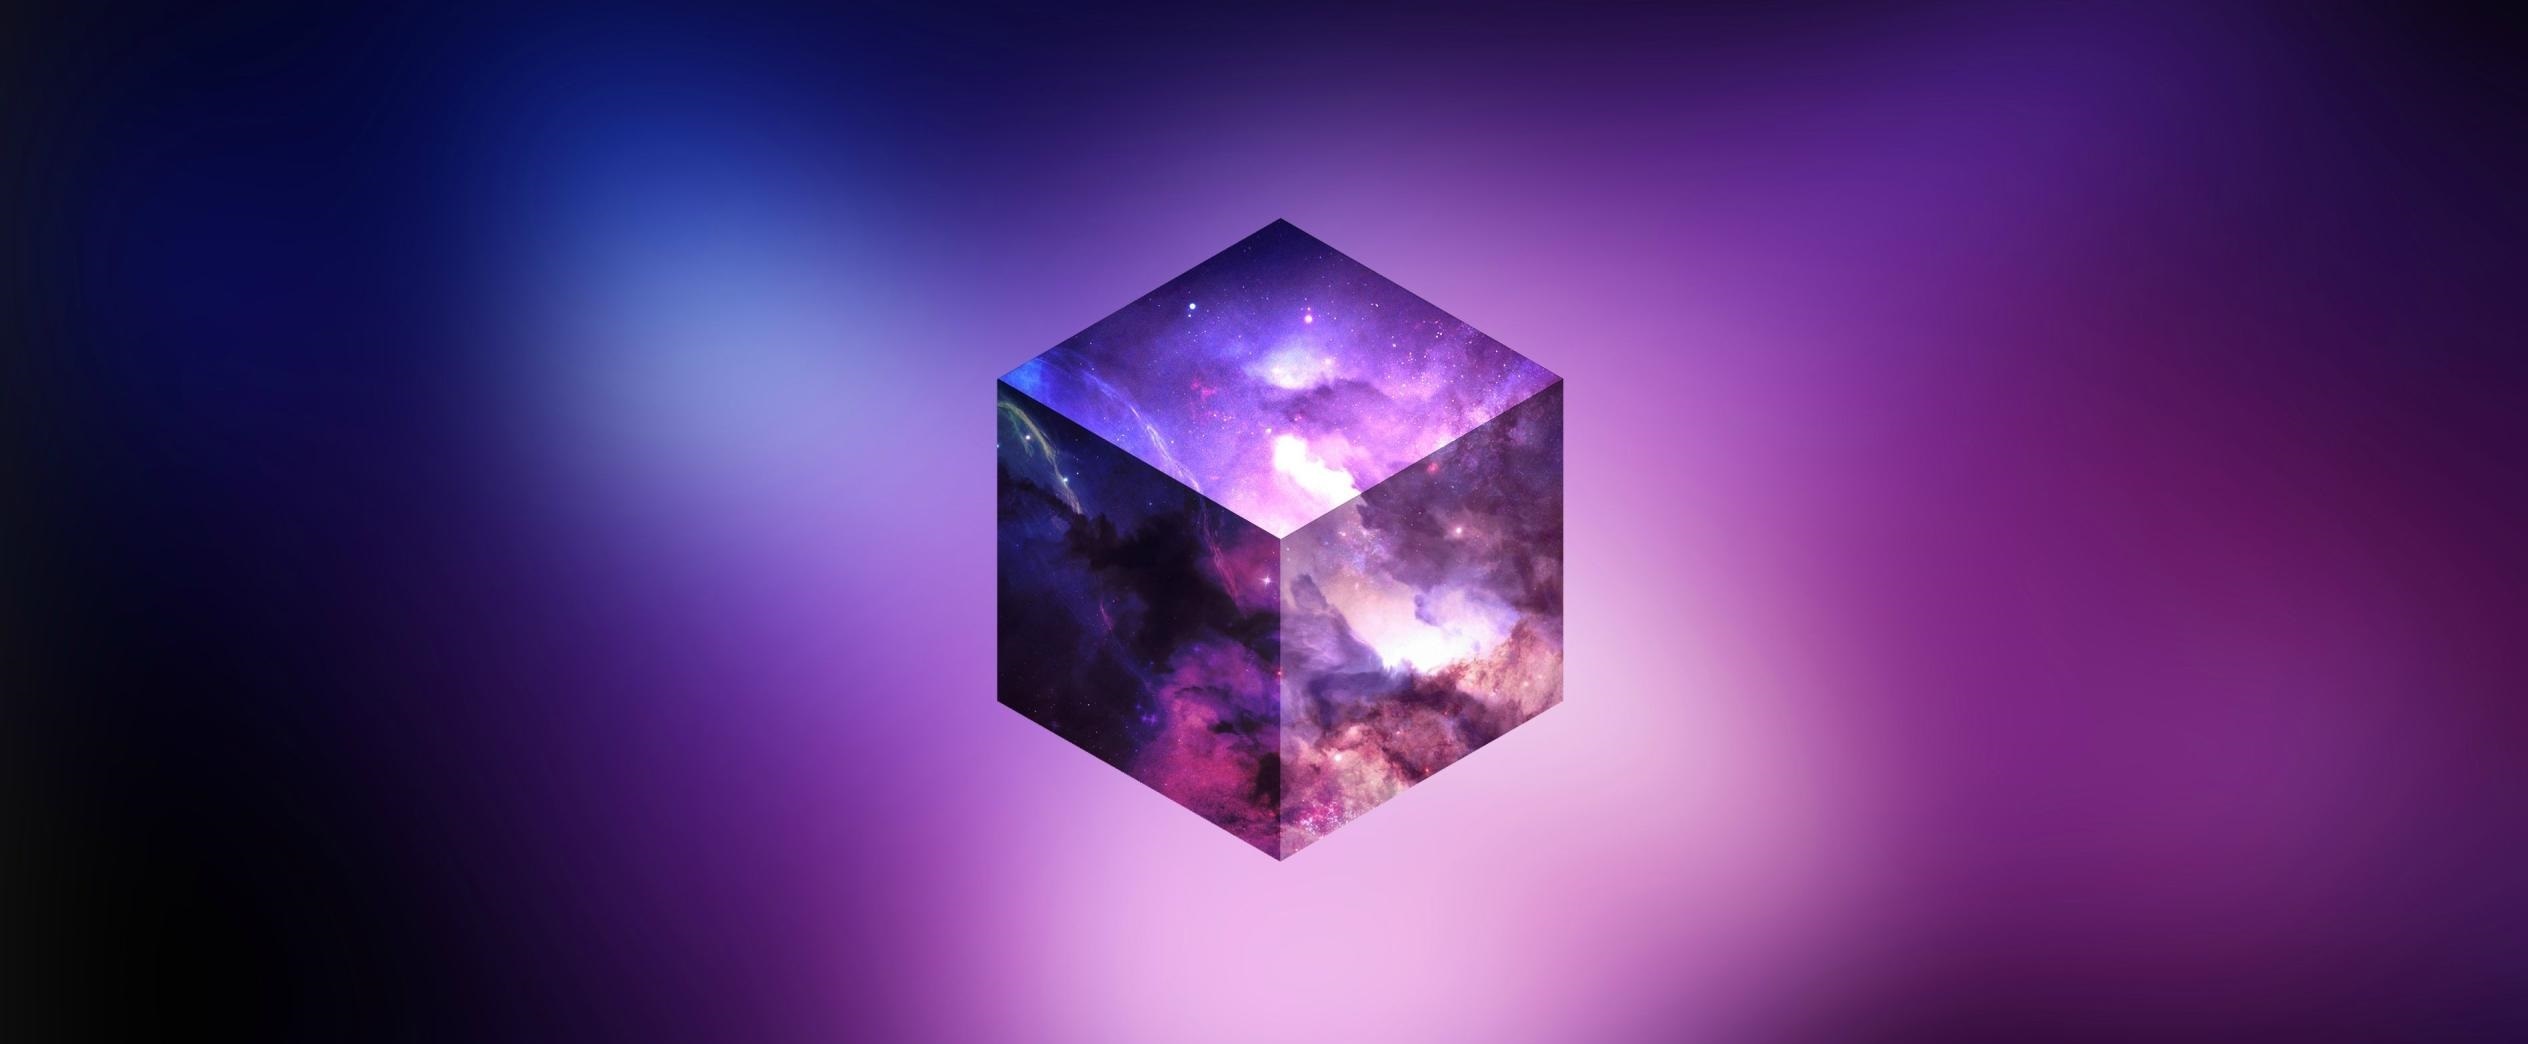 Felhos purple sky egy kocka tapeta 2560x1080 14 1